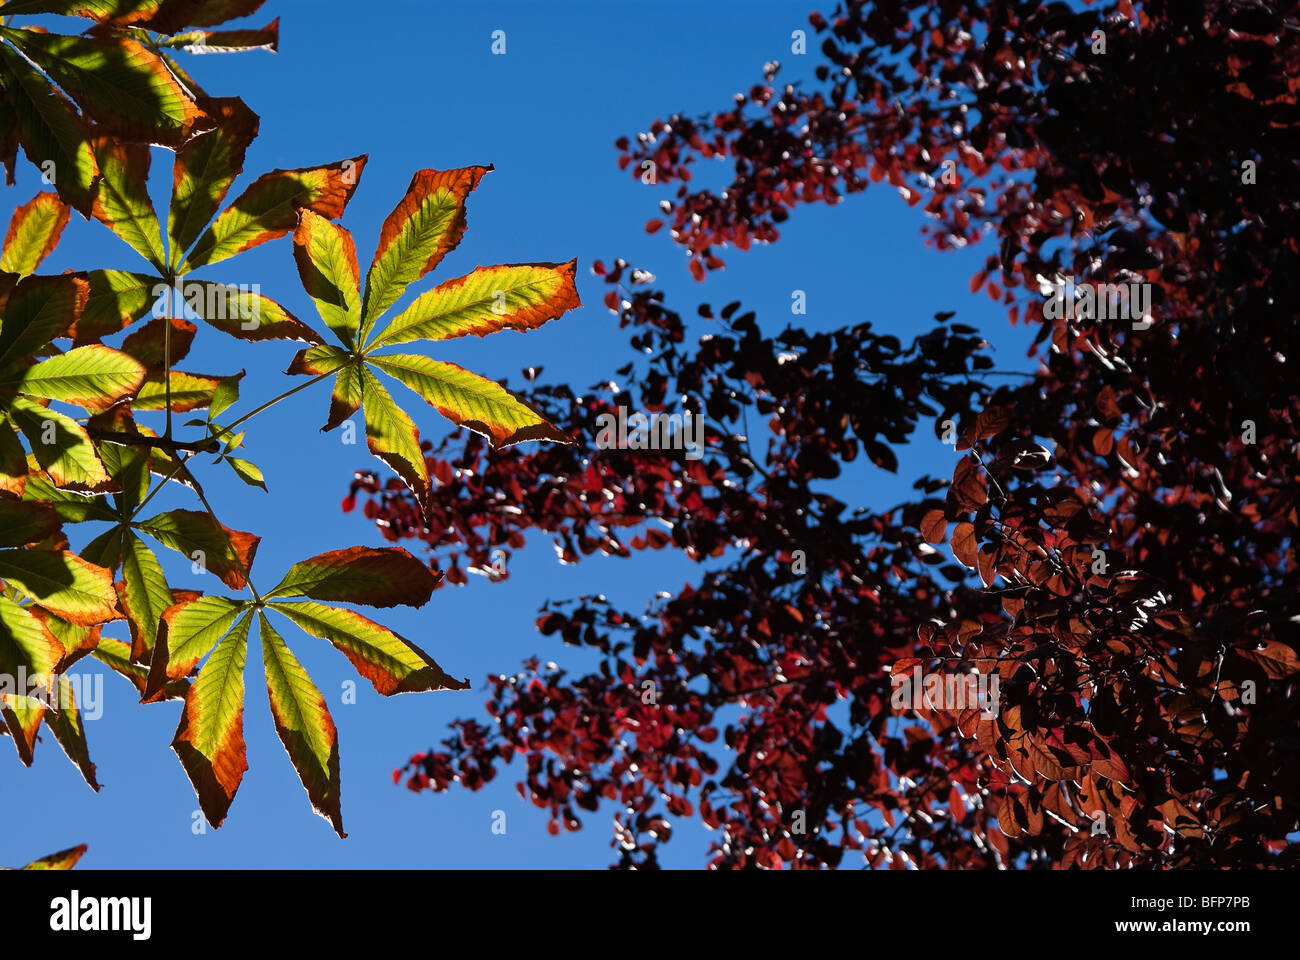 autumn leaf against blue sky Stock Photo